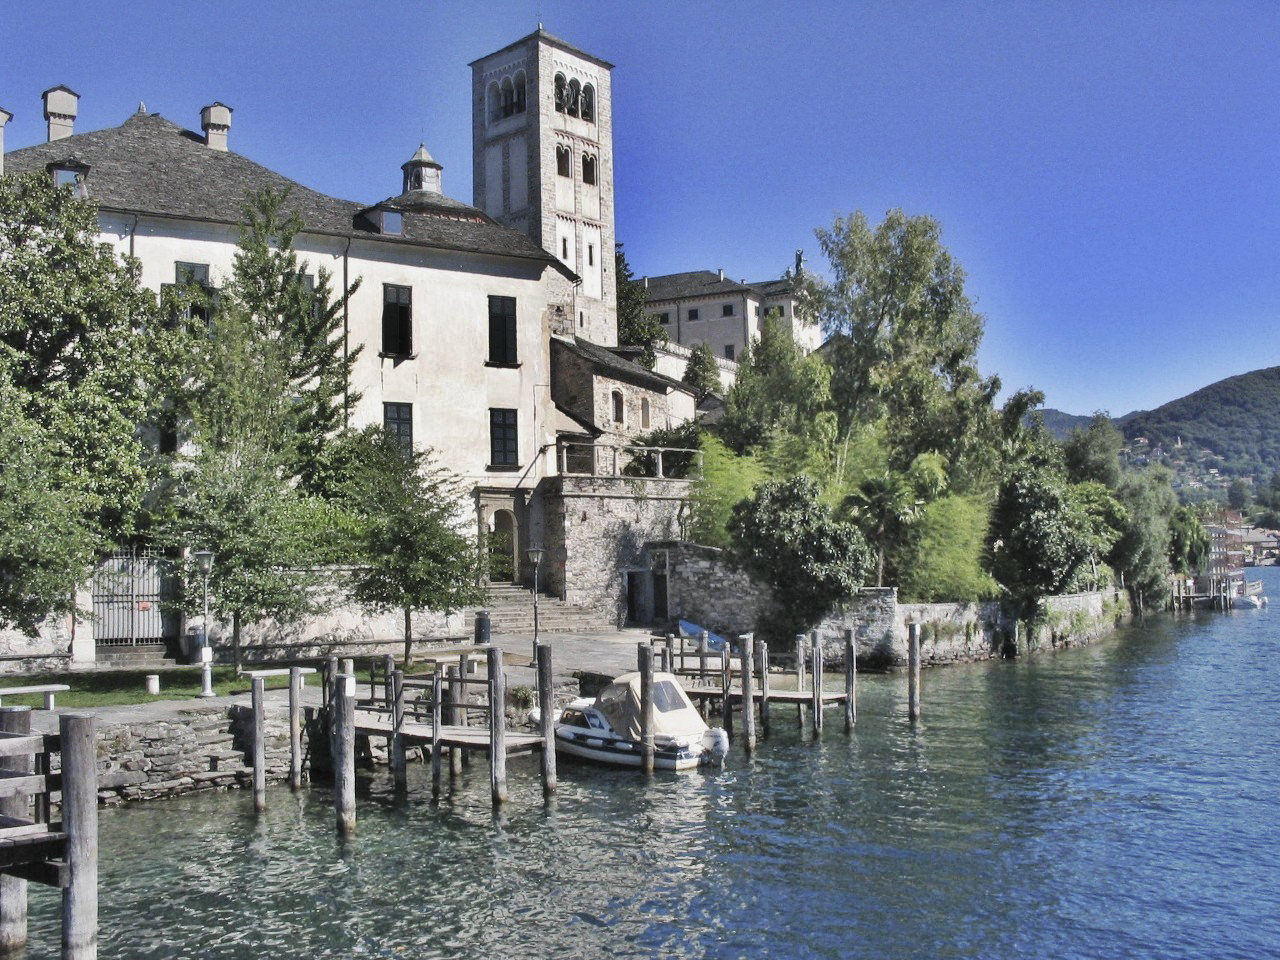 Stresa location for civil weddings on Lake Maggiore